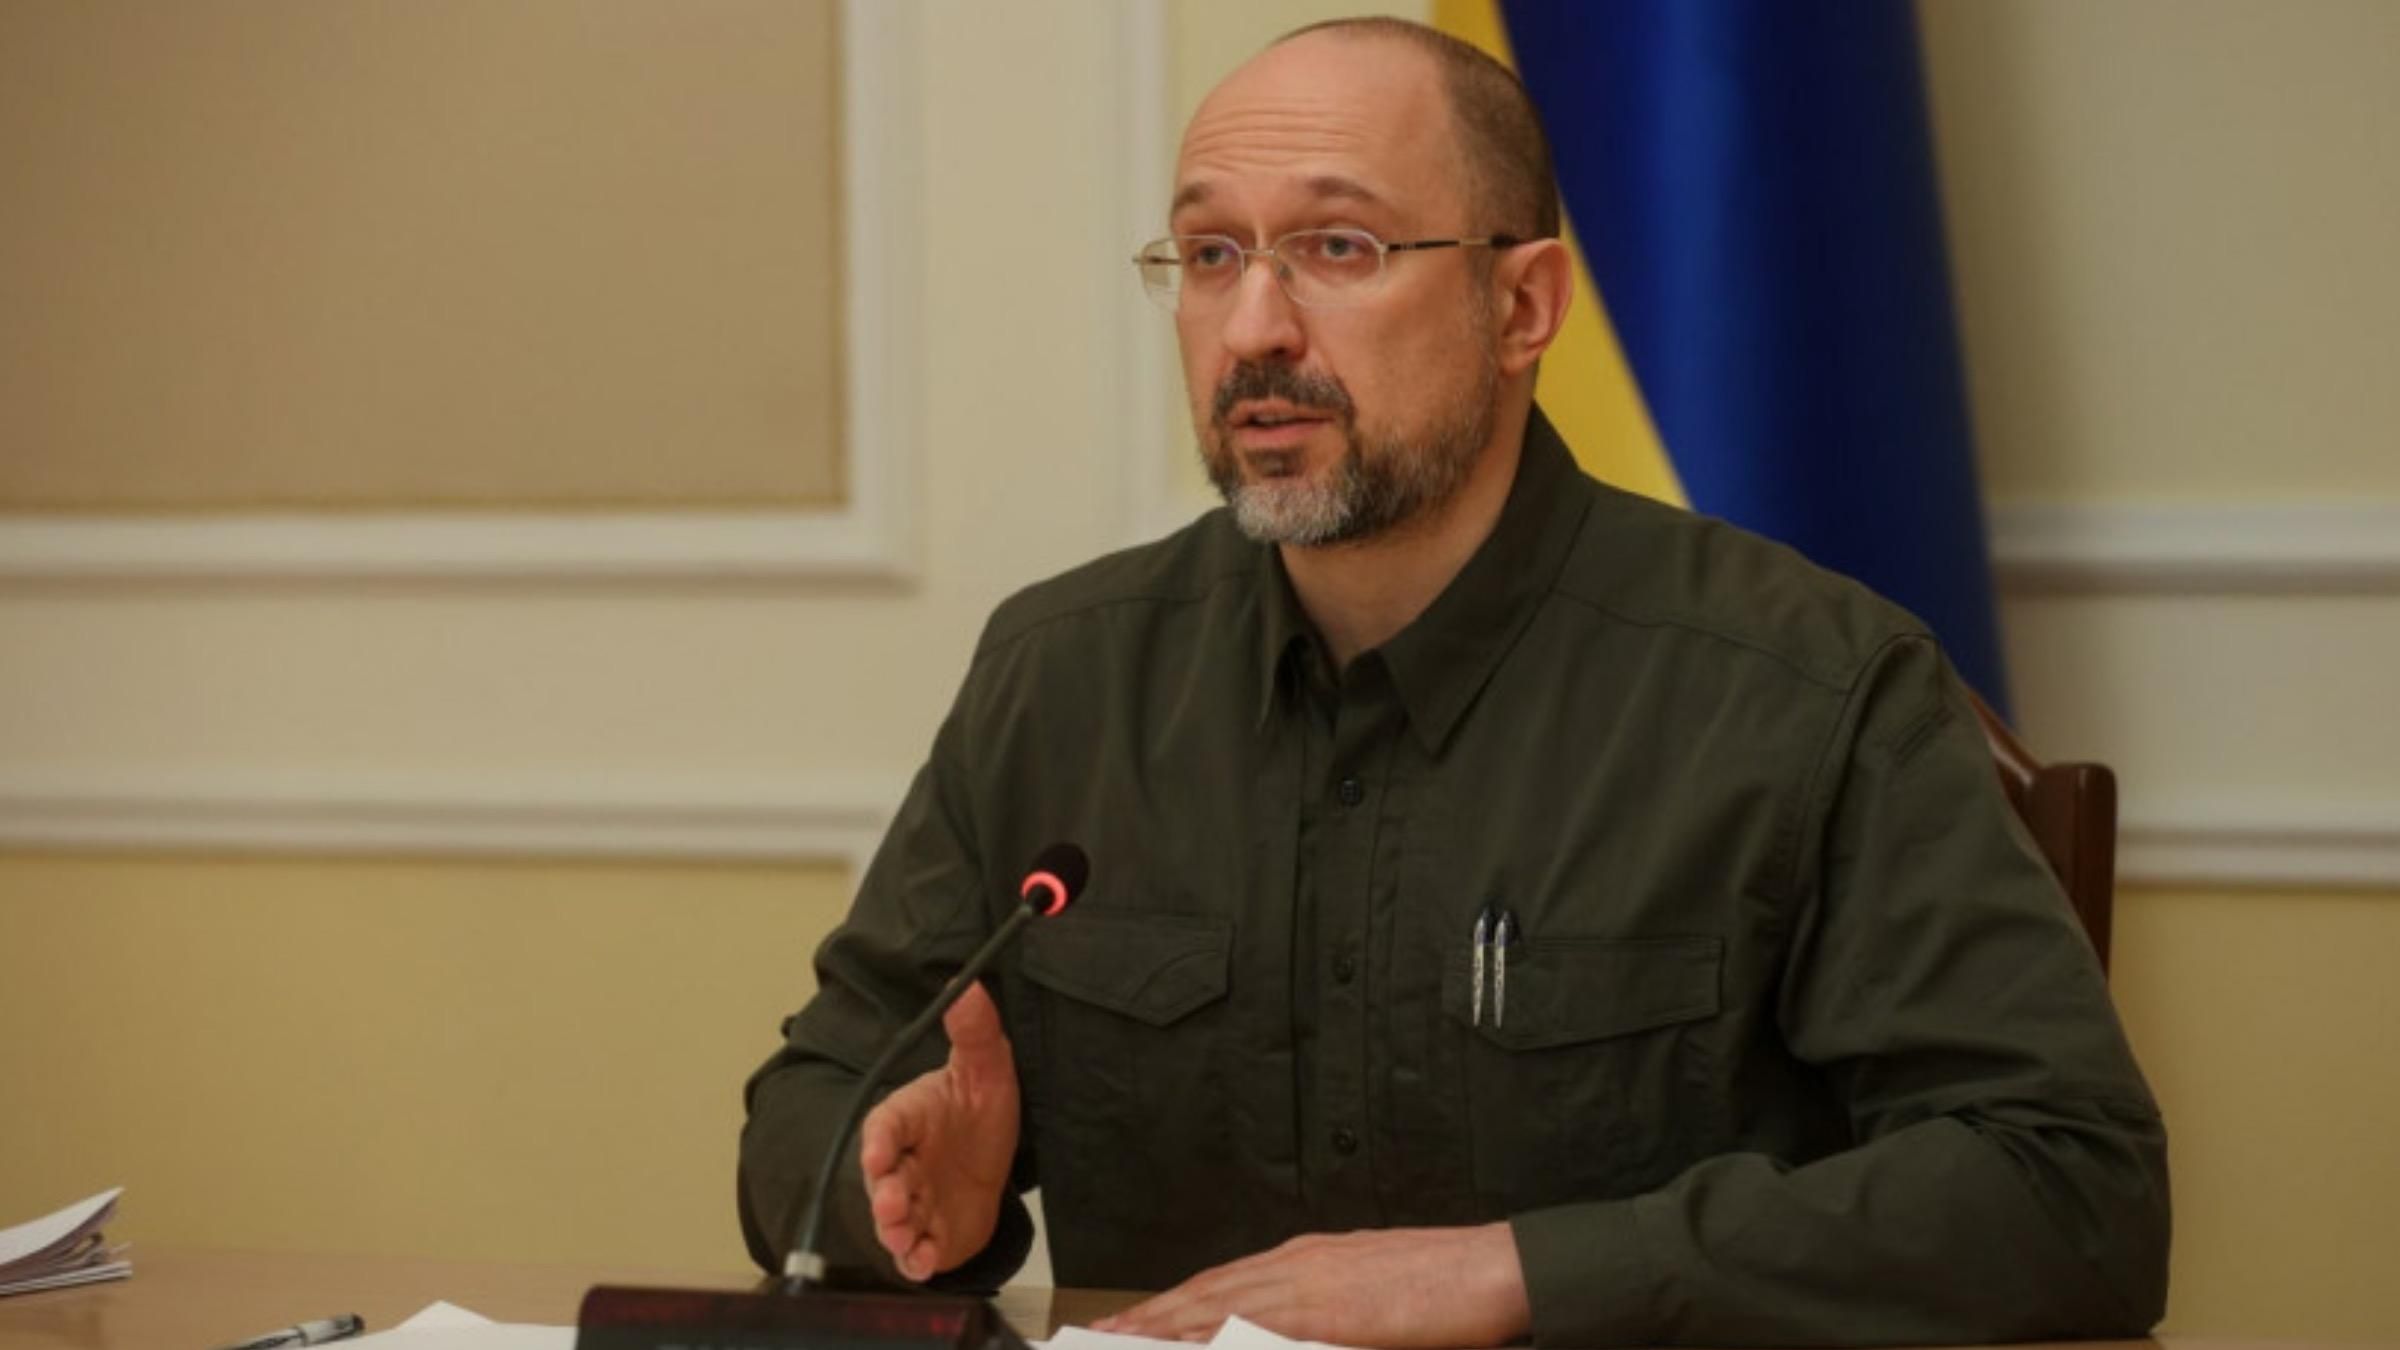 ЄС відкрив для постачання пального в Україну спеціальні коридори, – Шмигаль